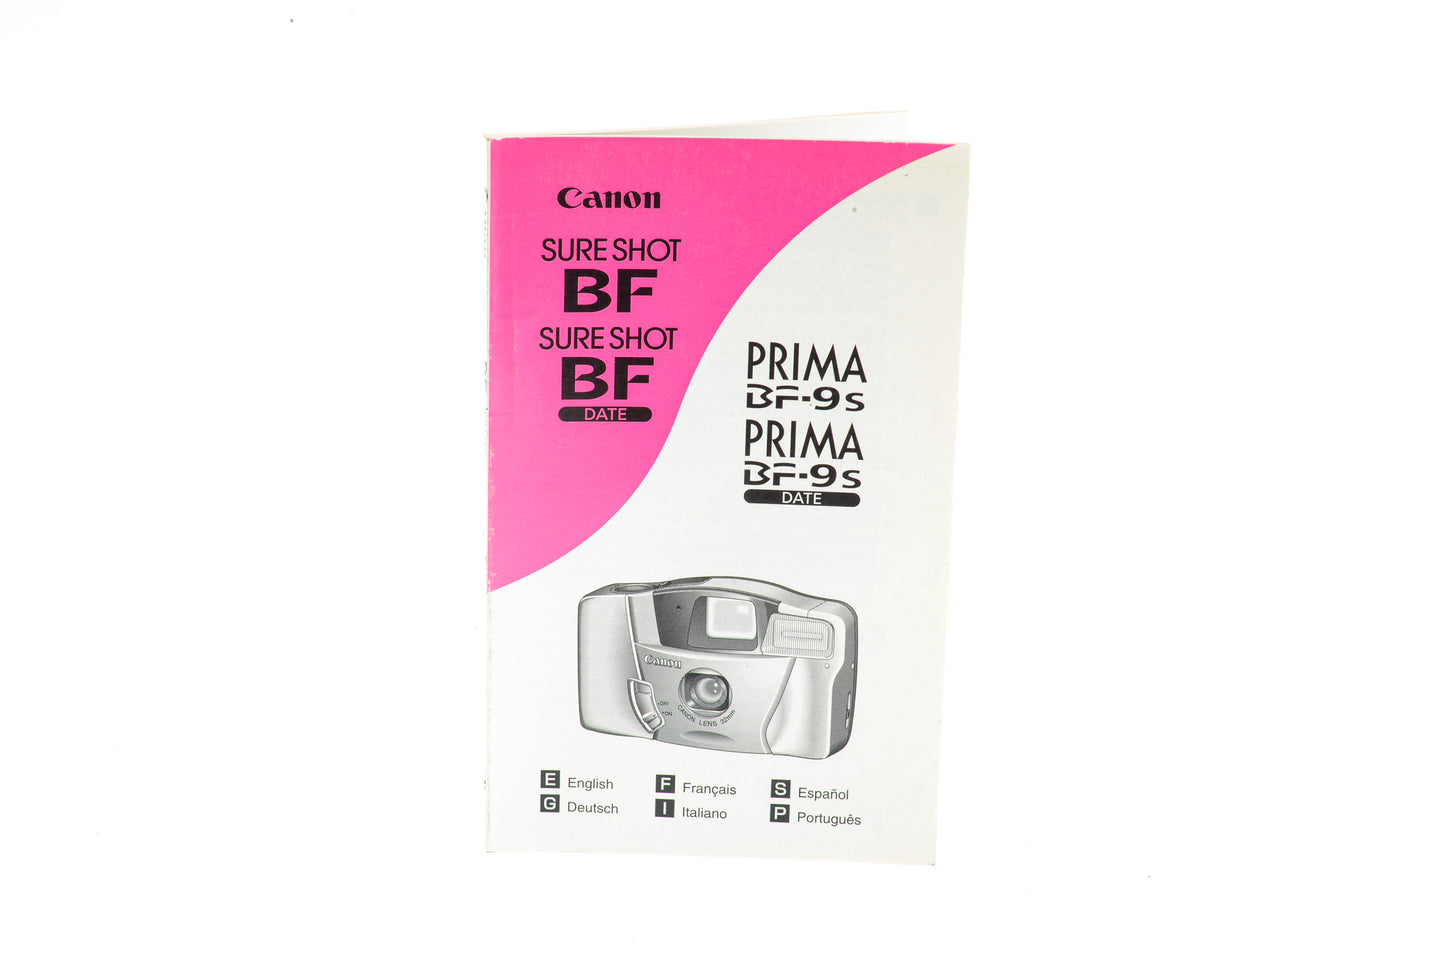 Canon Prima BF-9S Instruction Manual